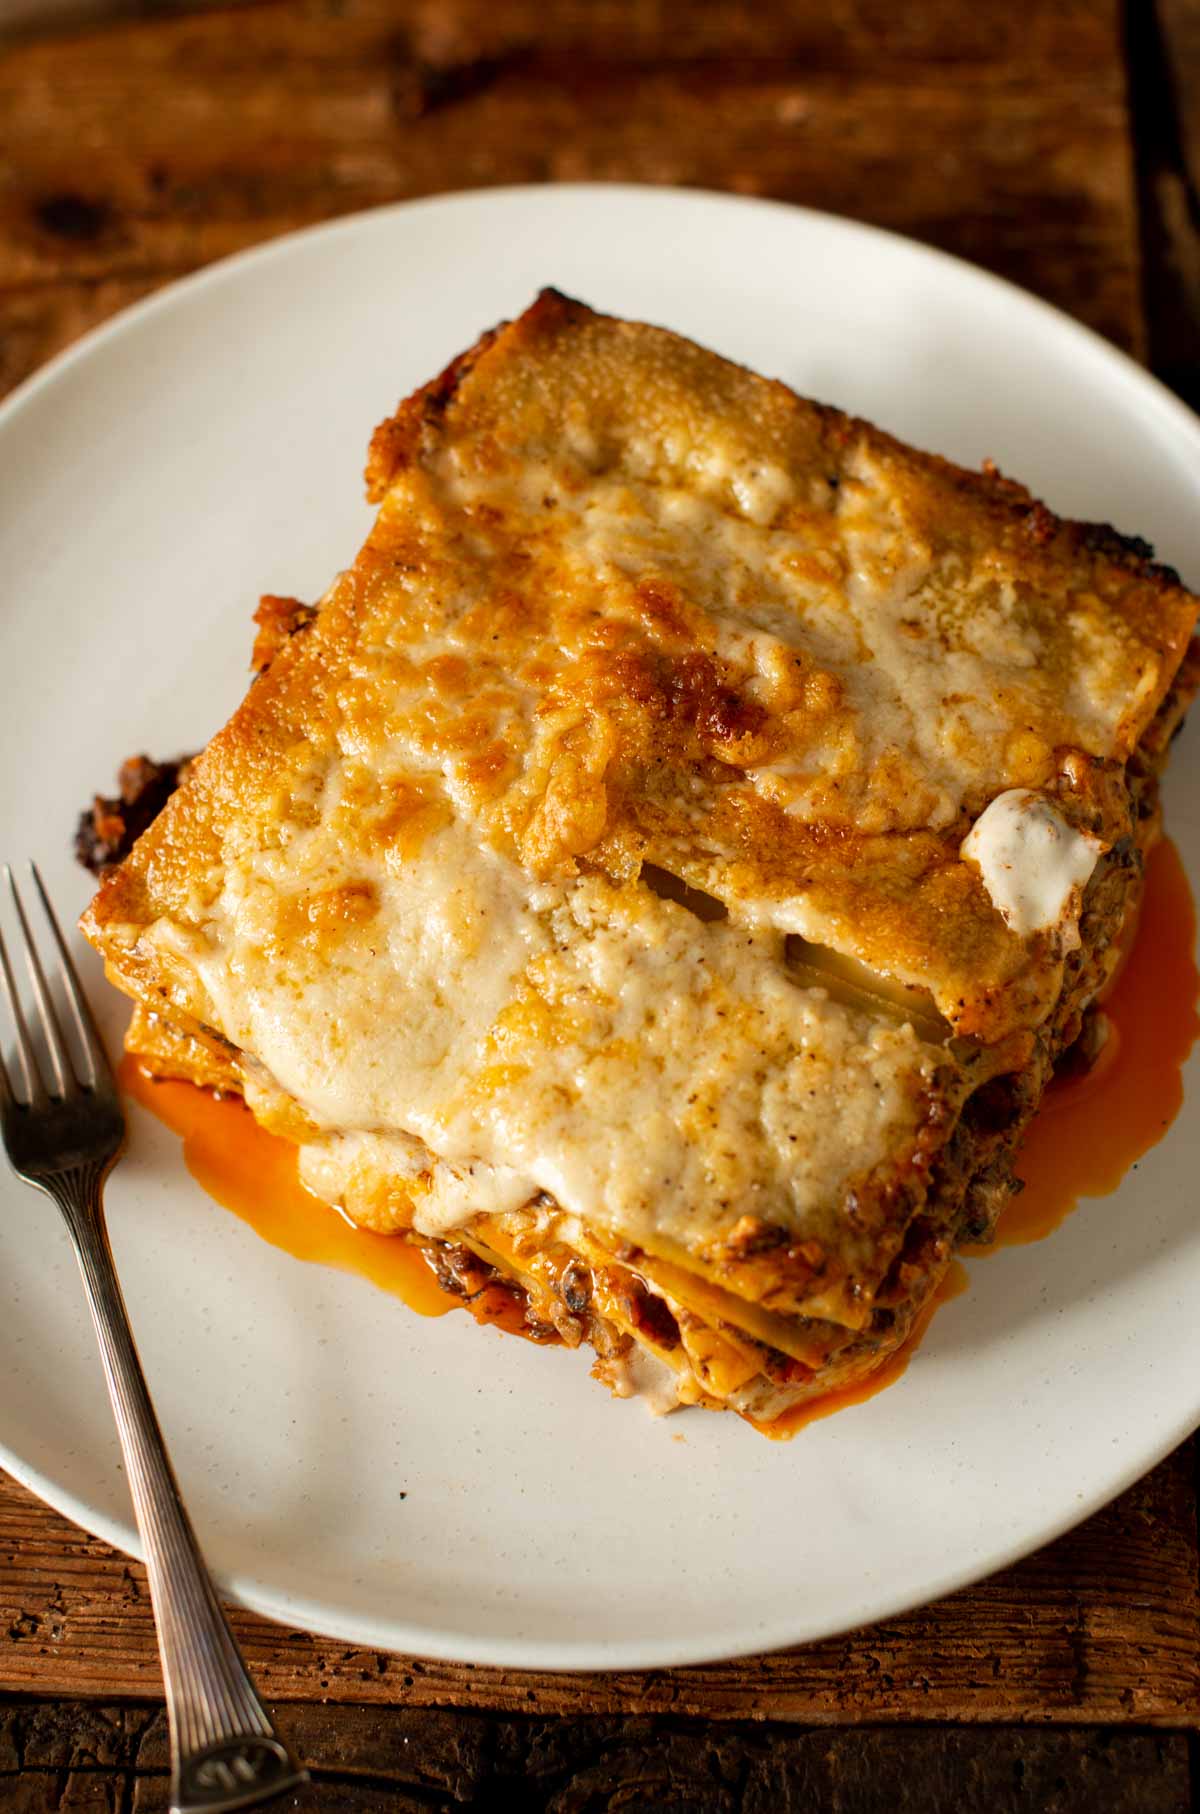 Image: piece of vegan lasagna on a dish